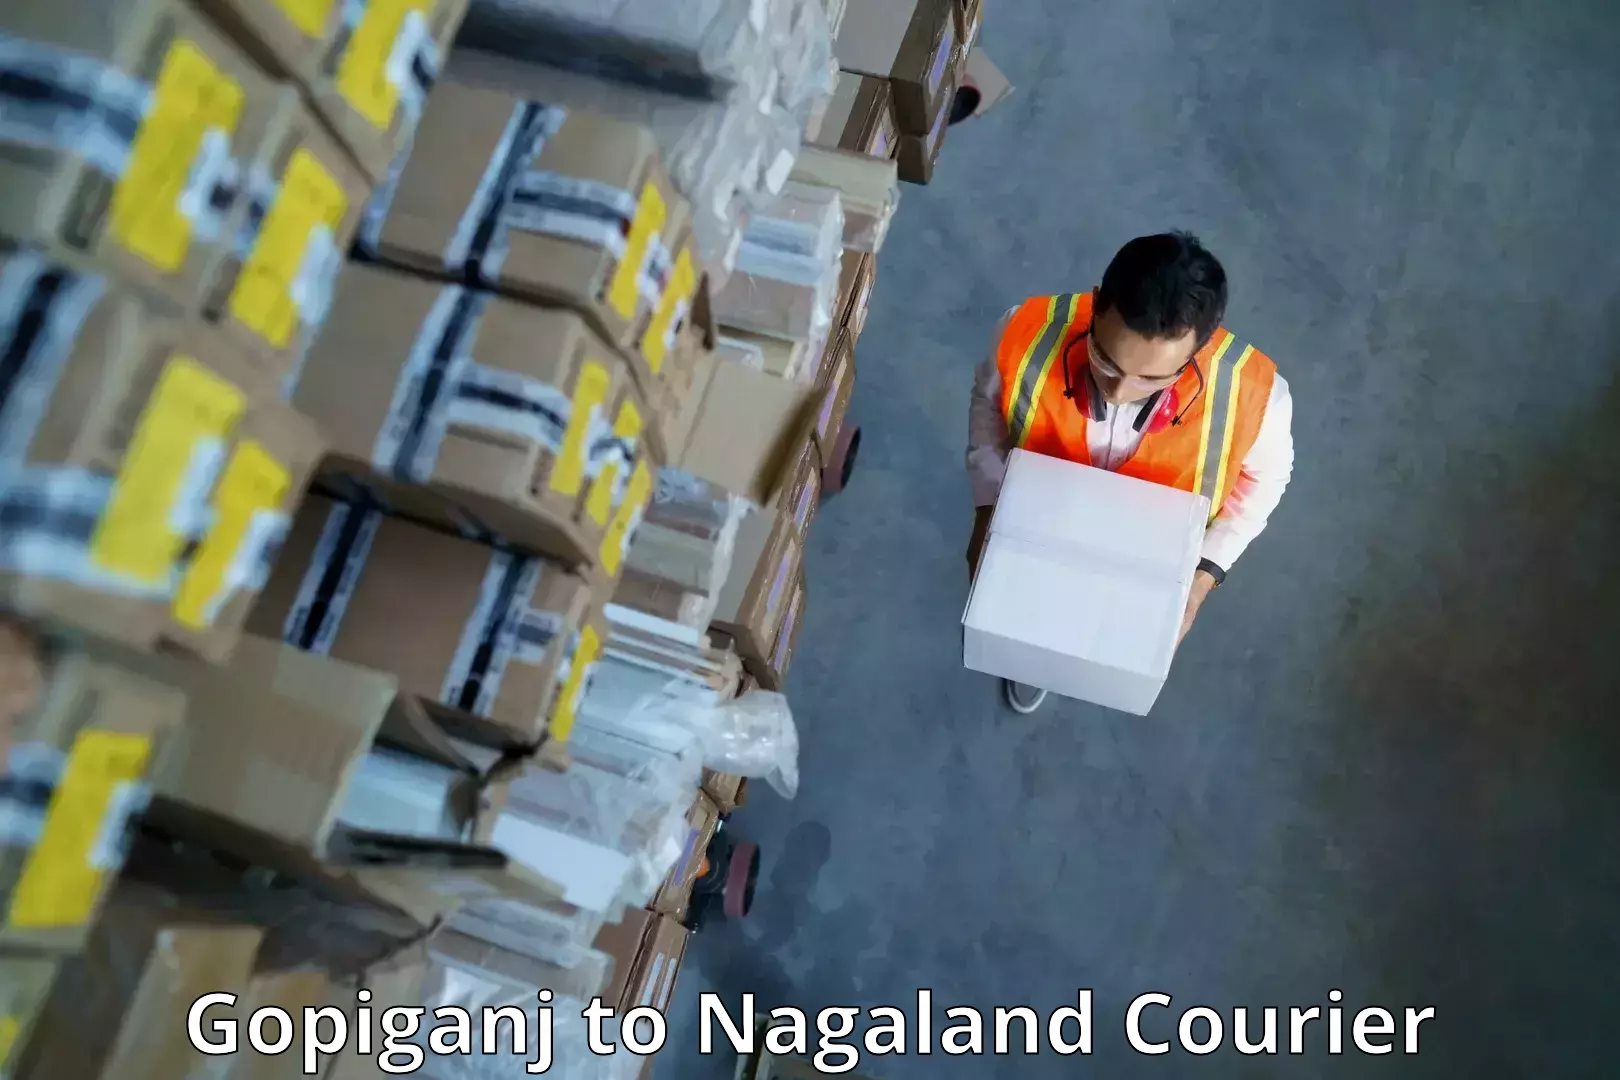 International courier networks Gopiganj to Nagaland